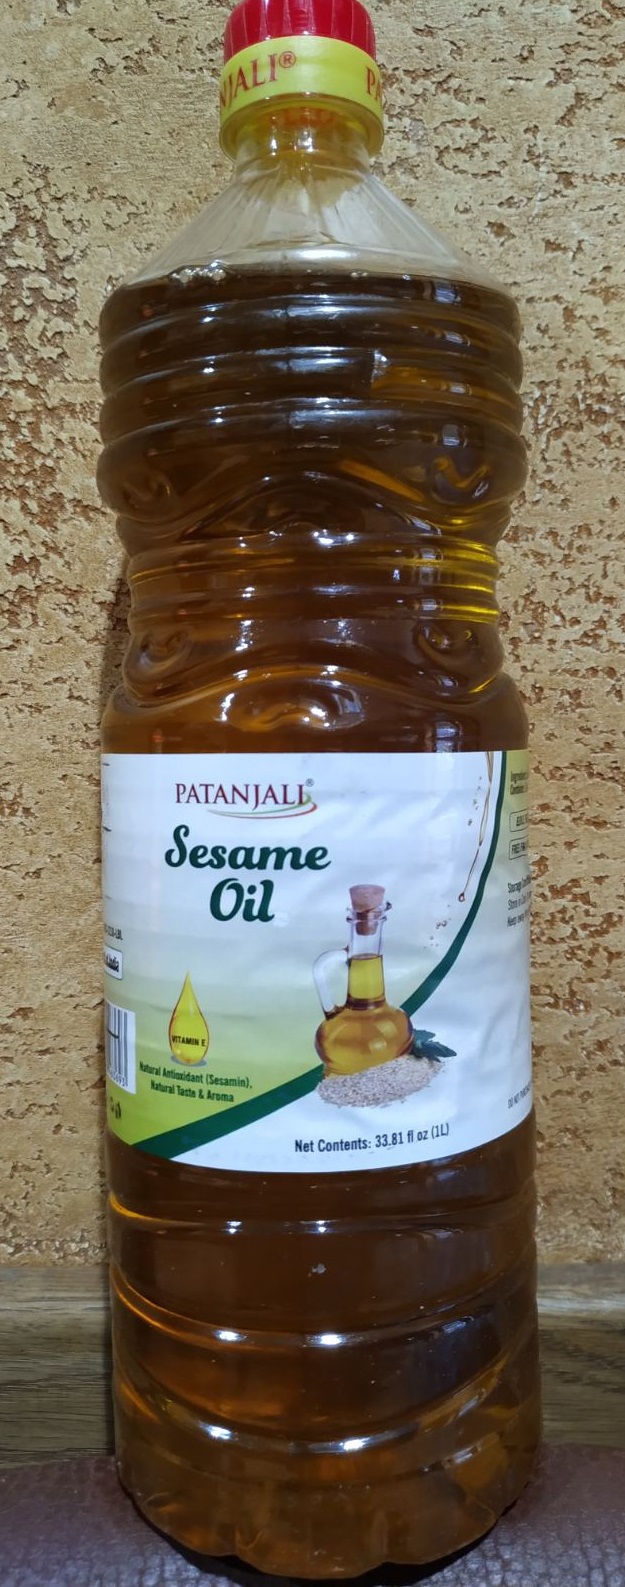 Кунжутное масло Sesame oil Patanjali 1 литр Индия первый холодный отжим, отменное качество! 